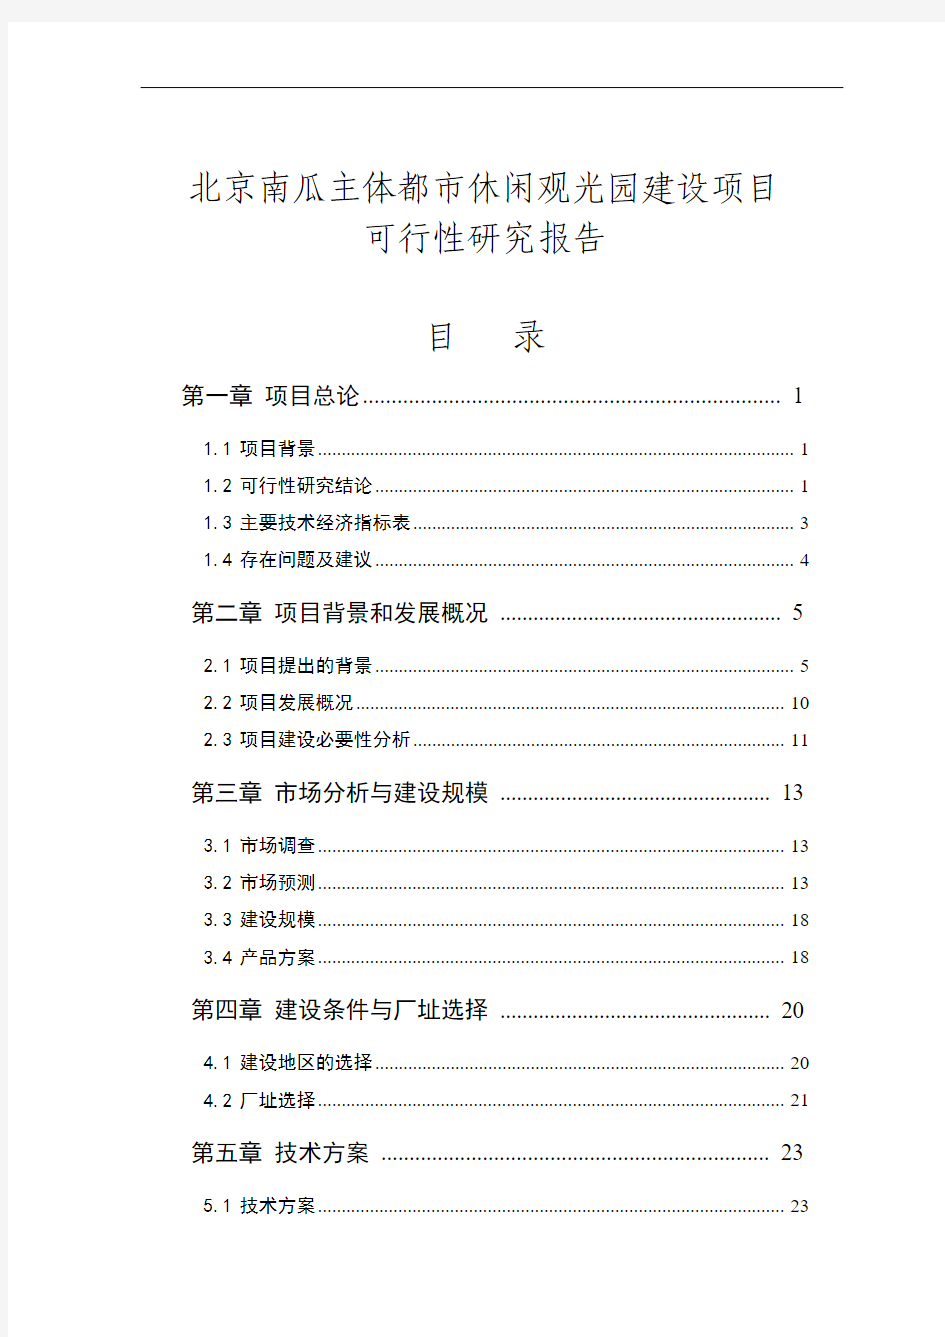 200601_未知_北京_南瓜主体都市休闲观光园建设项目_可行性研究报告